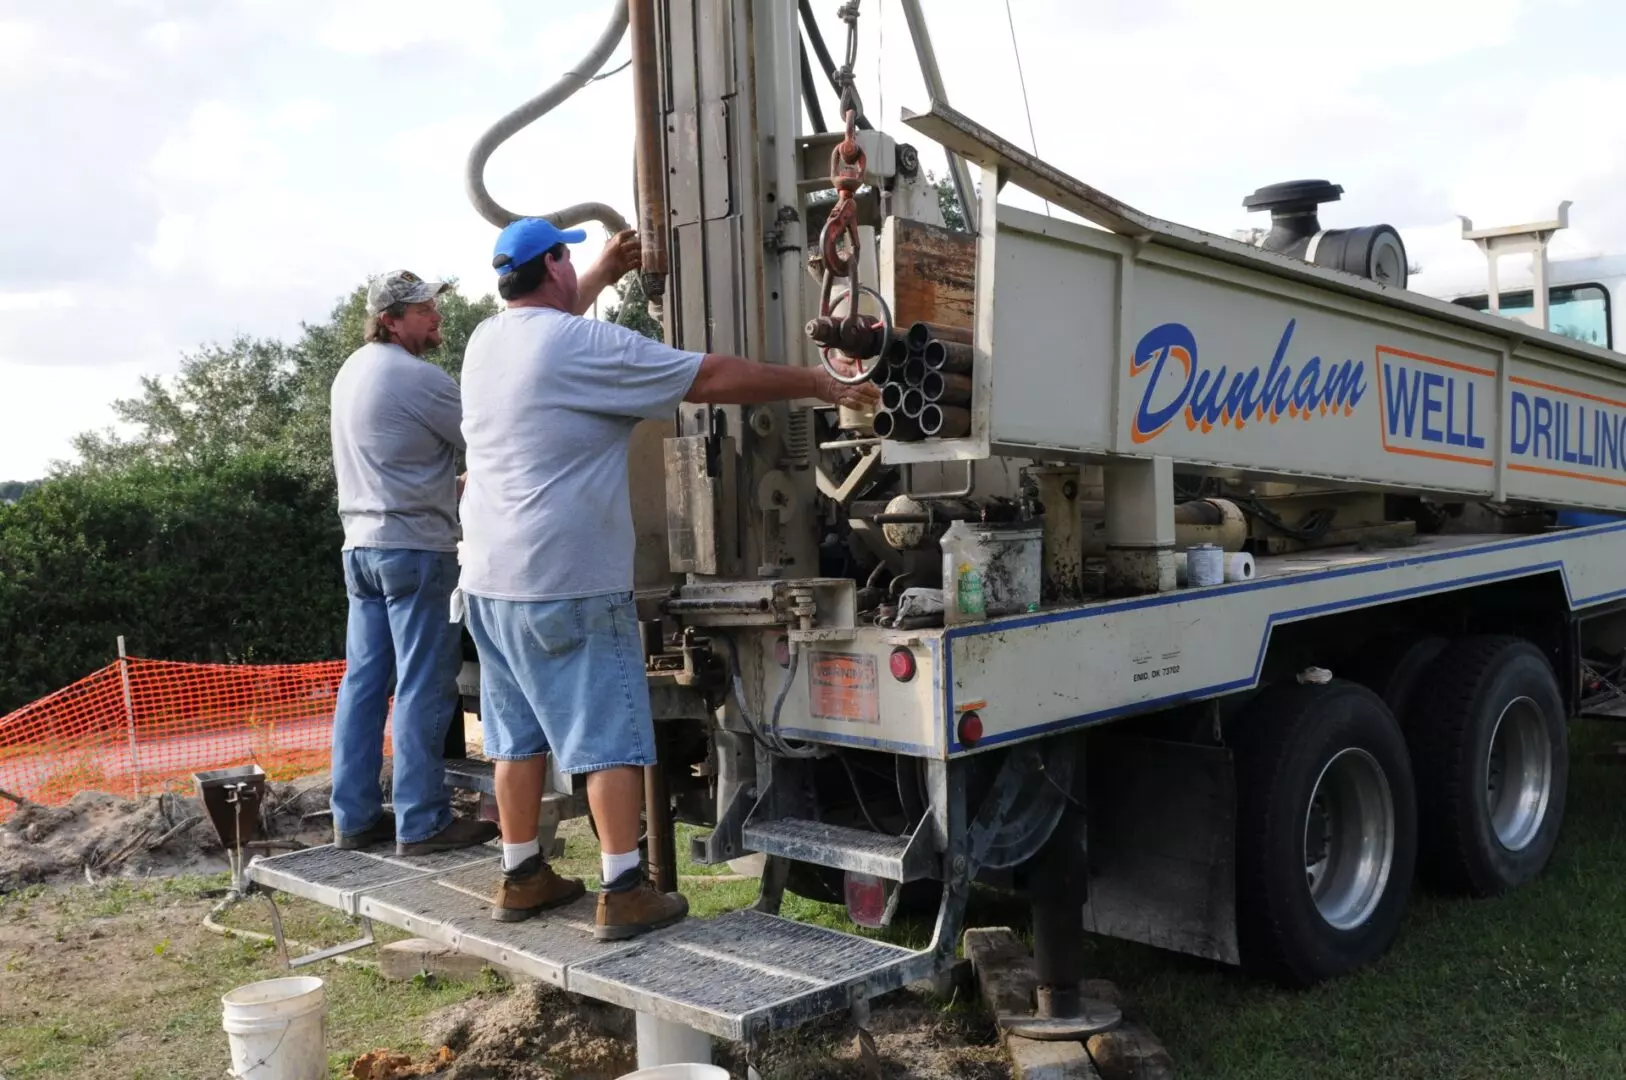 Dunham Well Drilling, Inc.